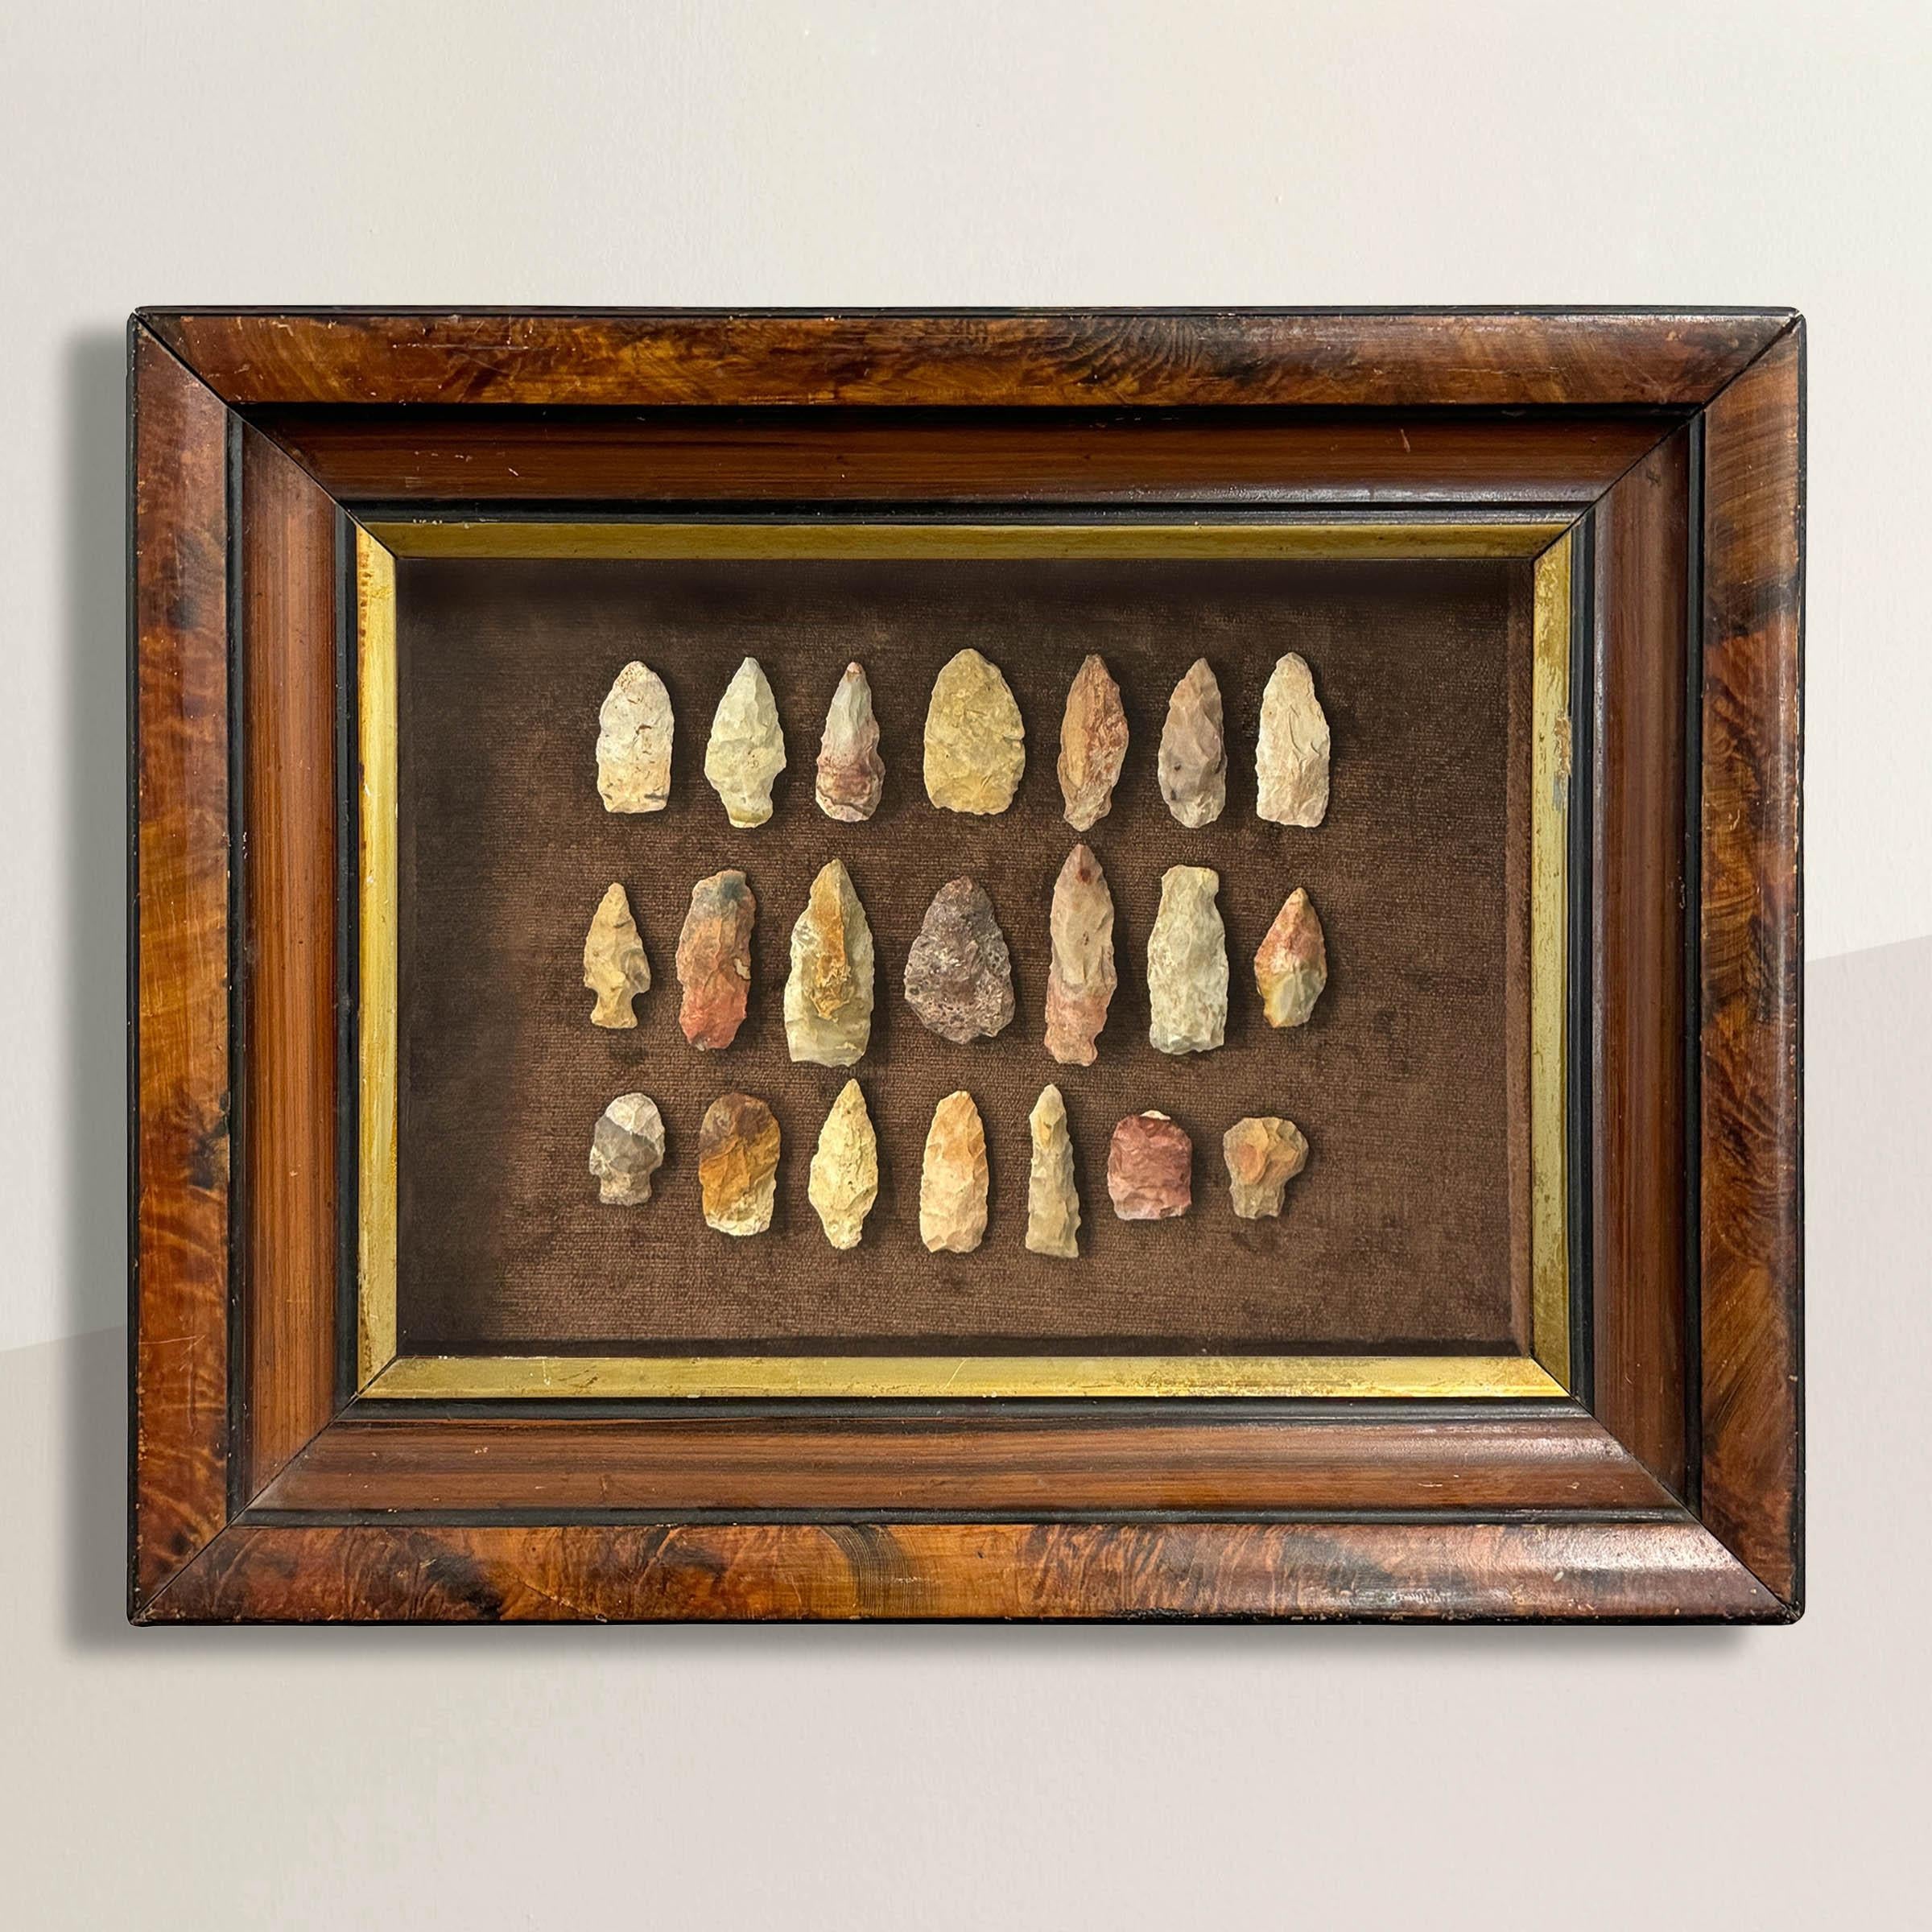 Un ensemble exceptionnel de 21 pointes de flèches en pierre, découvertes dans le comté de Waukesha, dans le Wisconsin, et encadrées dans une boîte d'ombrage peinte en faux grain du XIXe siècle, ces pointes de flèches capturent non seulement la